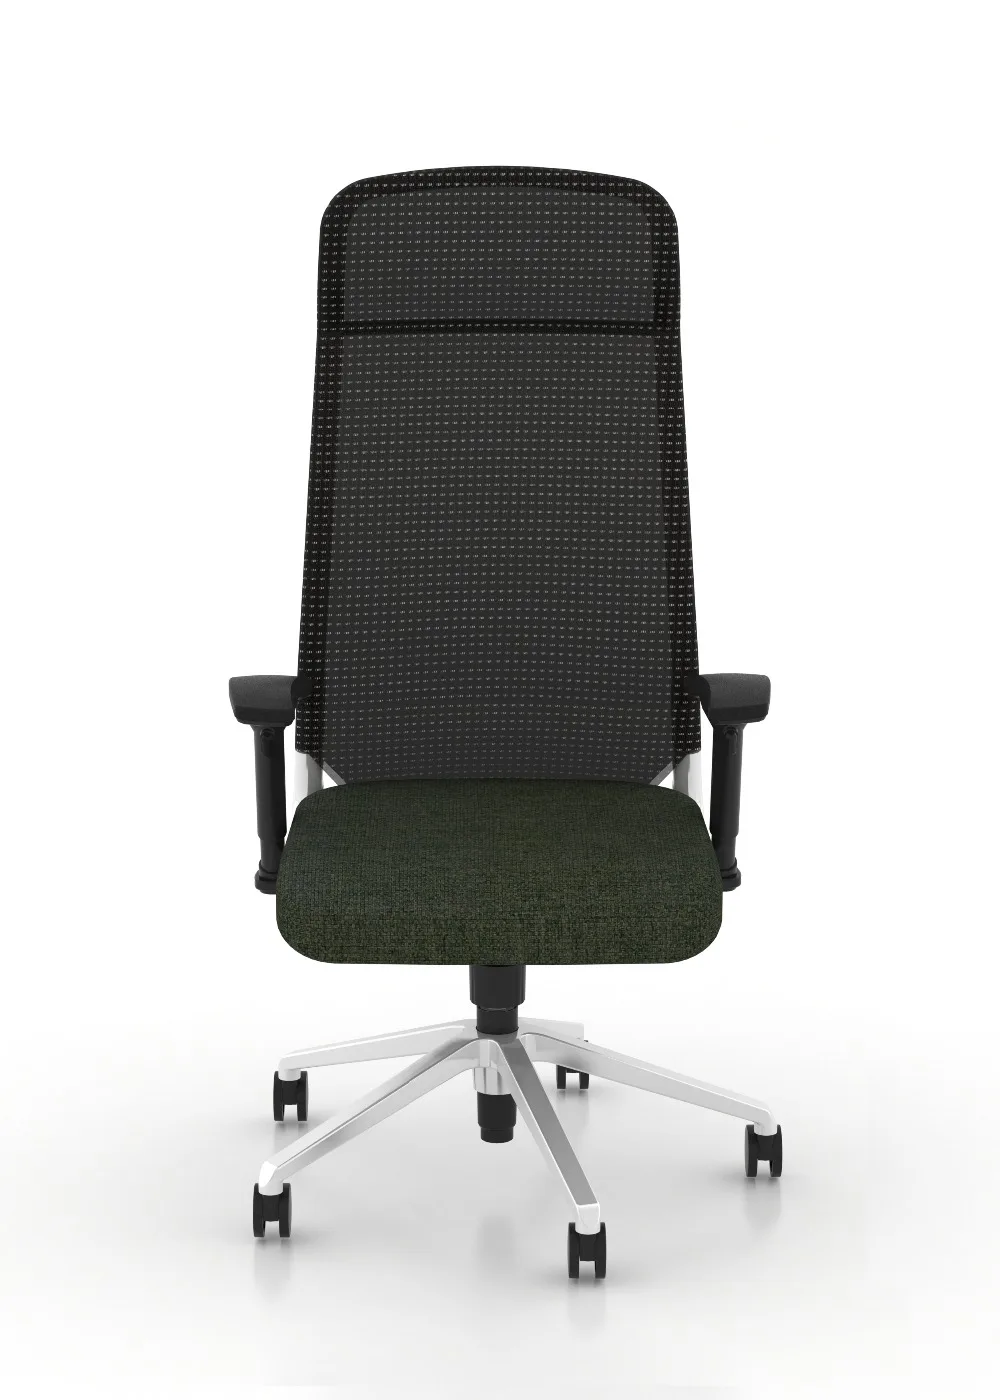 Регулируемый сетчатый стул с высокой спинкой эргономичный игровой регулируемый